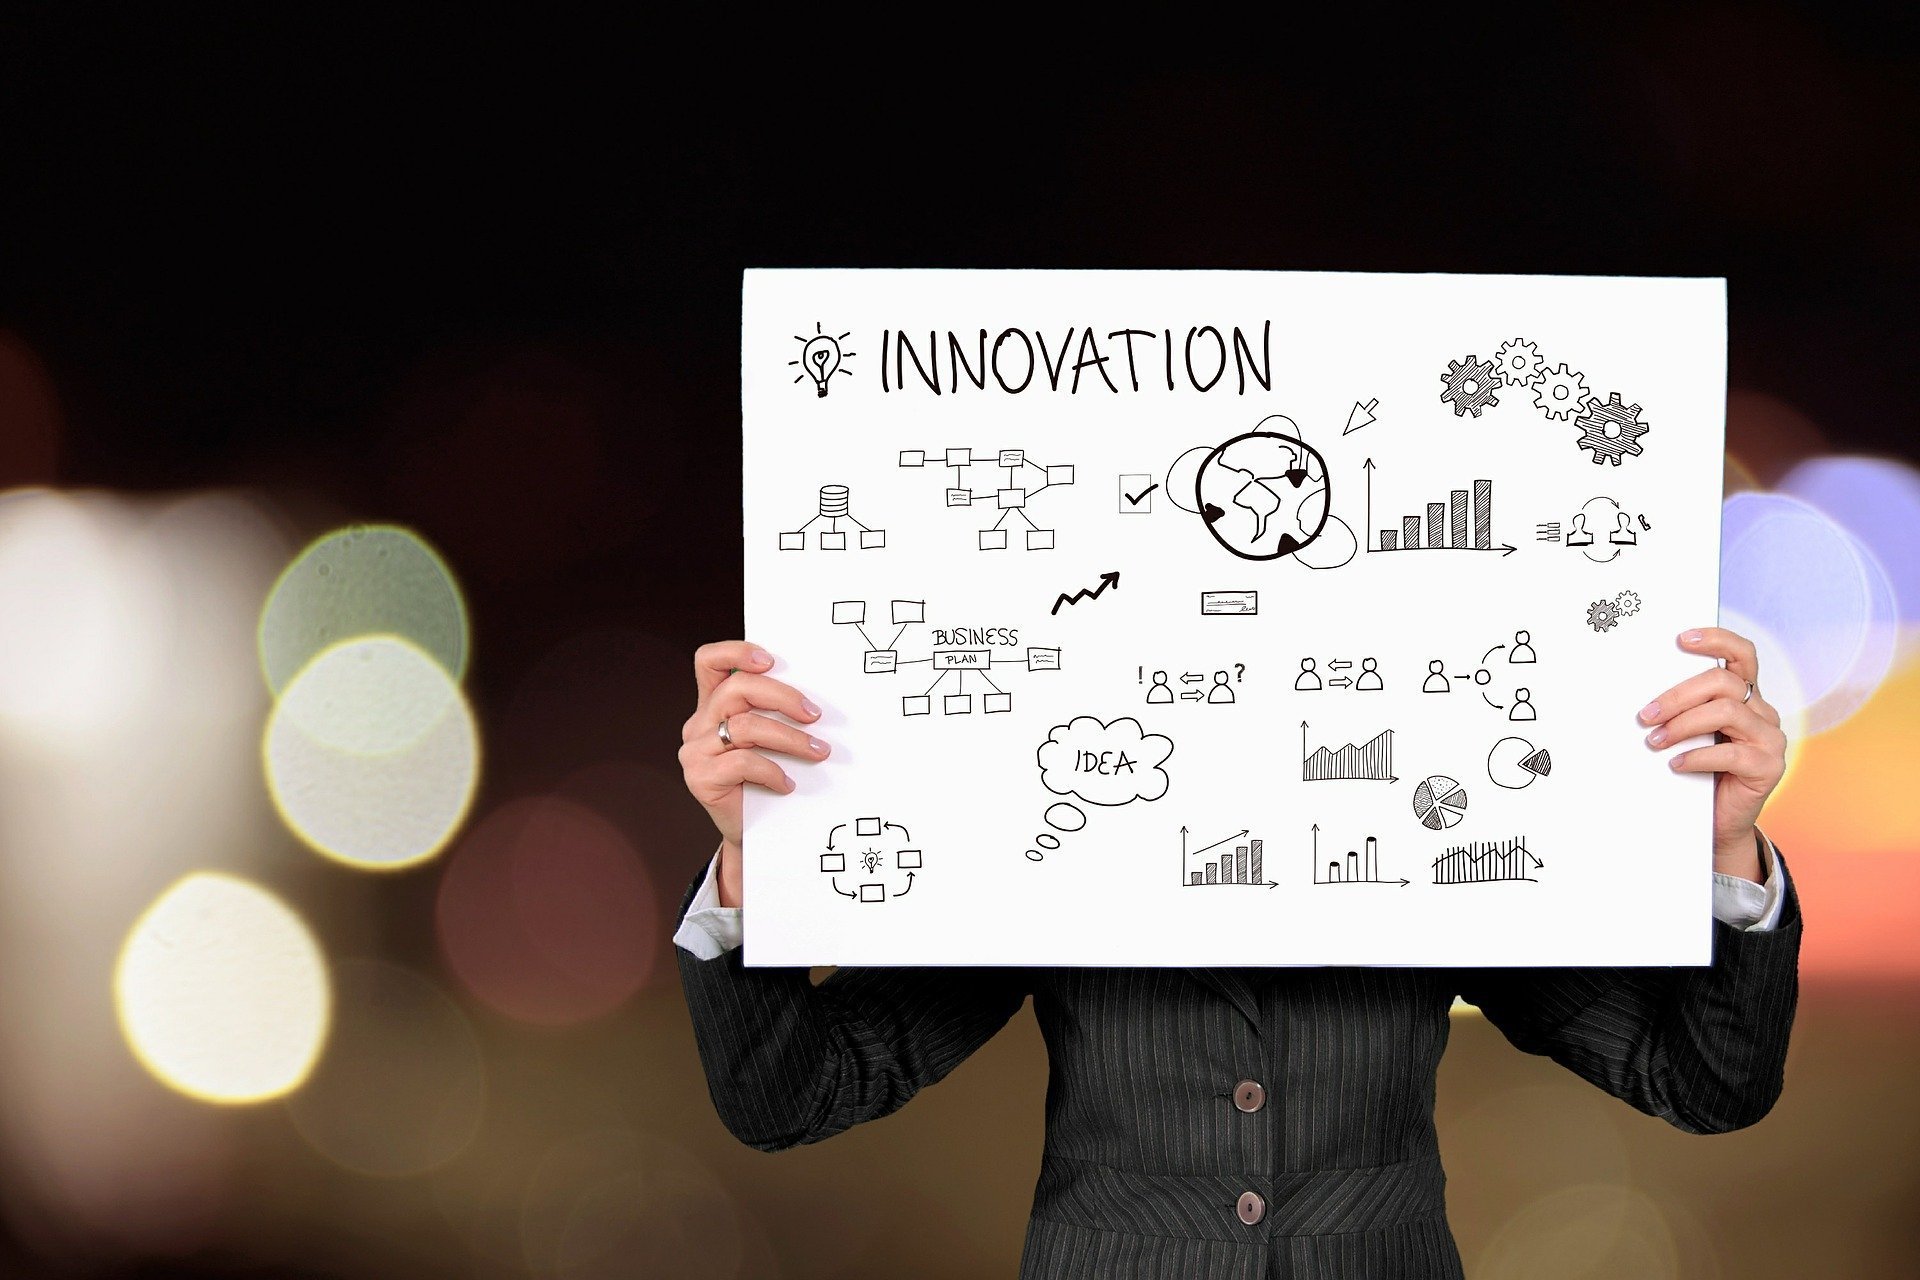 מדריך מעשי ליצירת חדשנות בעסקים קטנים או בחברות